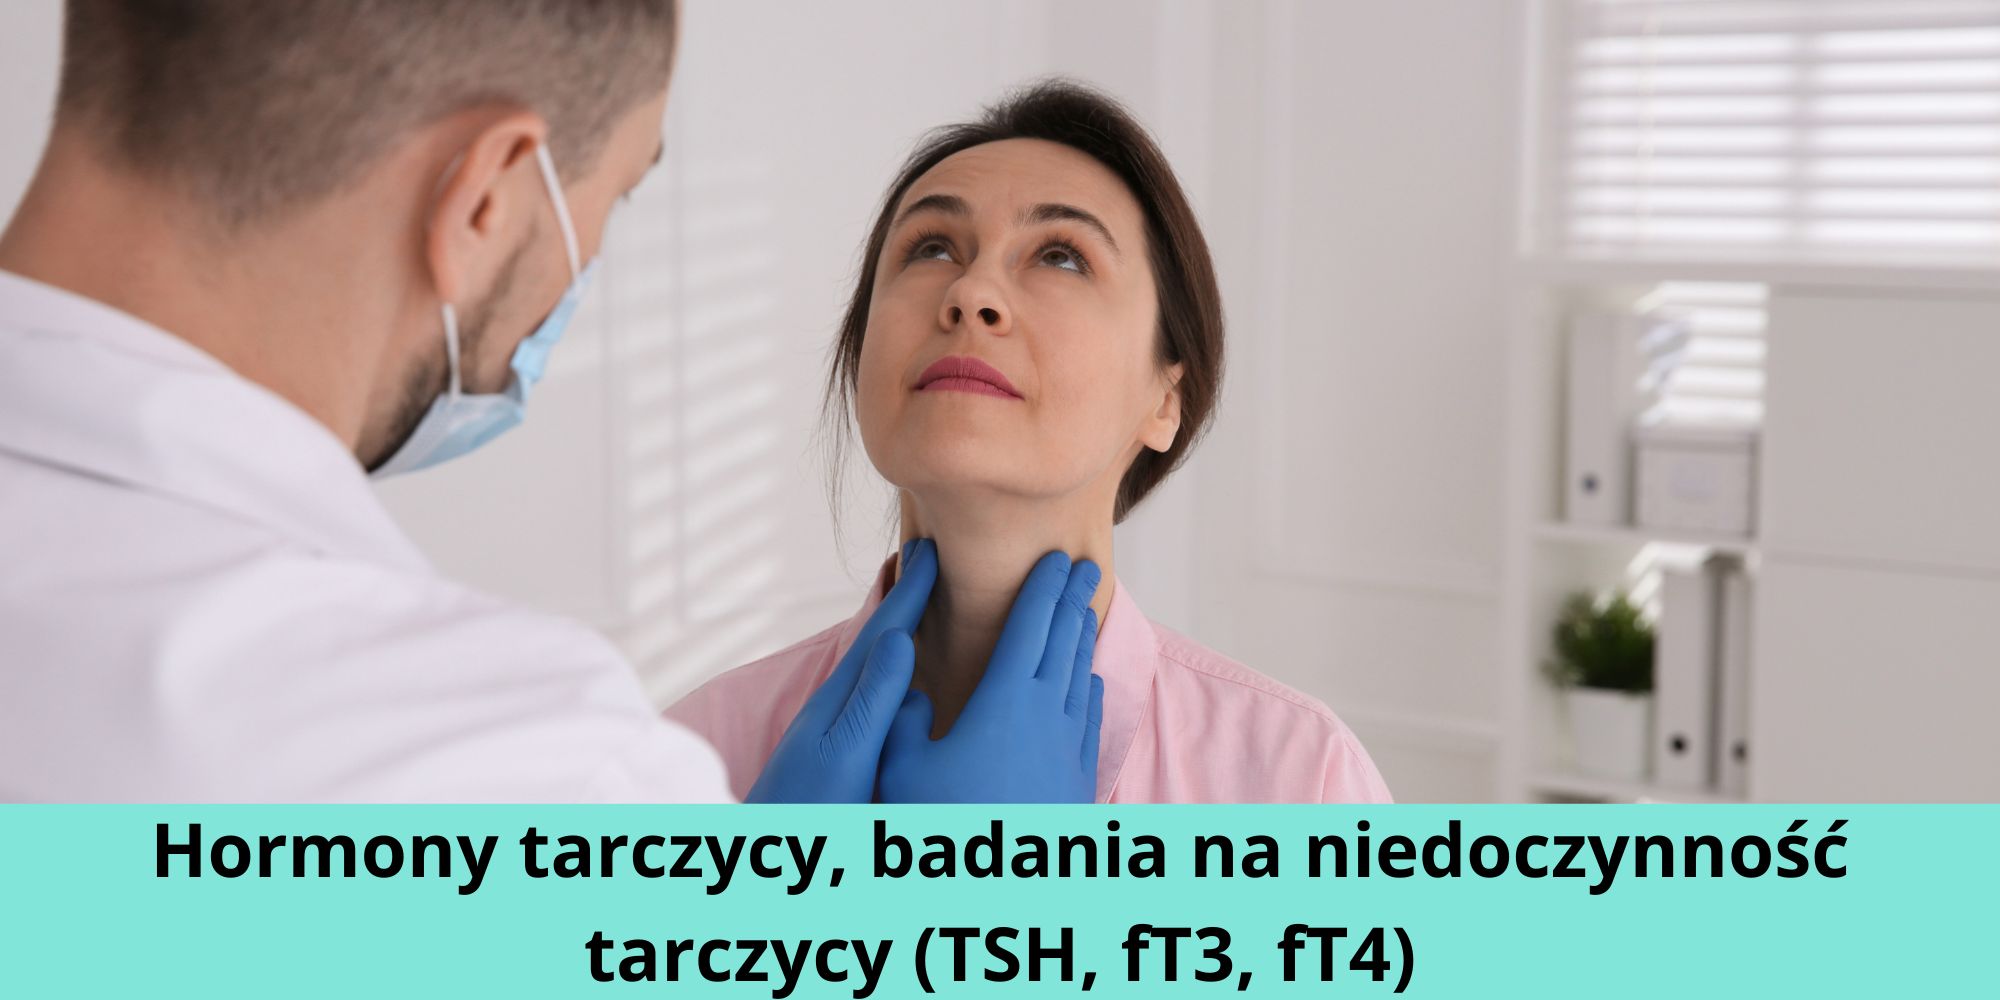 Hormony tarczycy, badania na niedoczynność tarczycy (TSH, fT3, fT4)